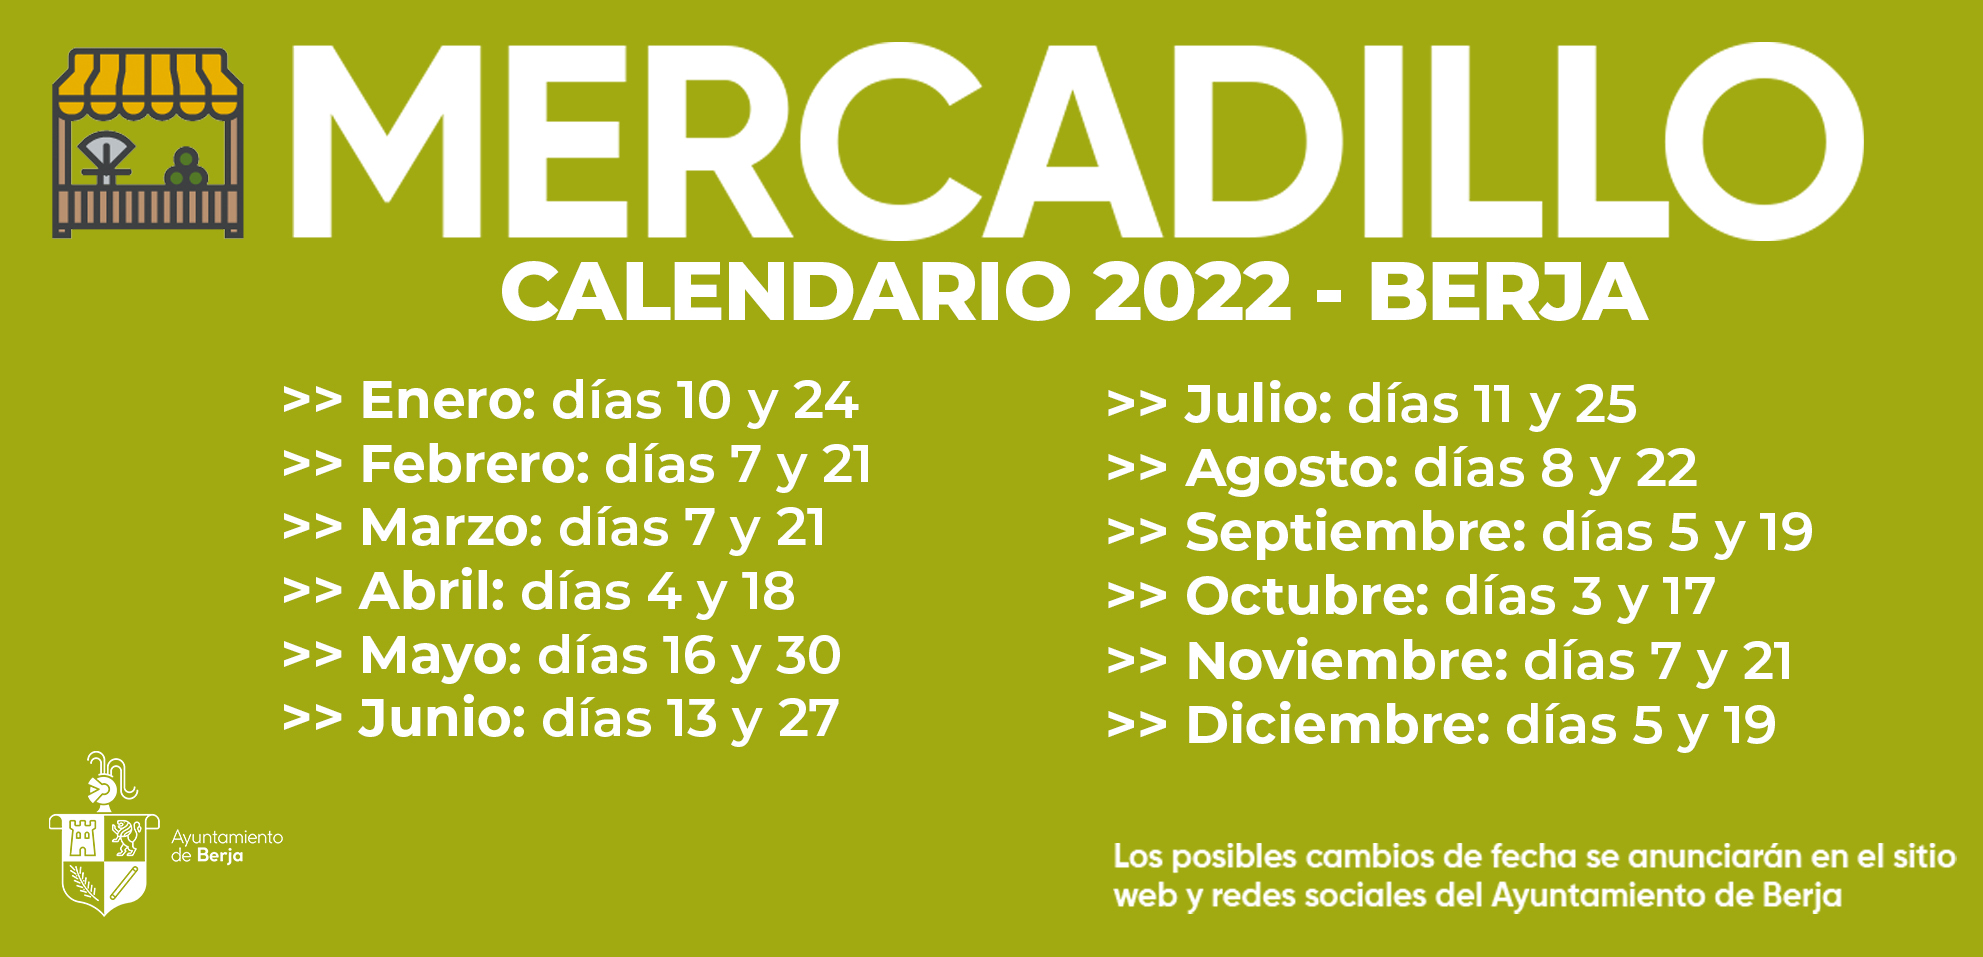 Calendario del Mercadillo de Berja 2022